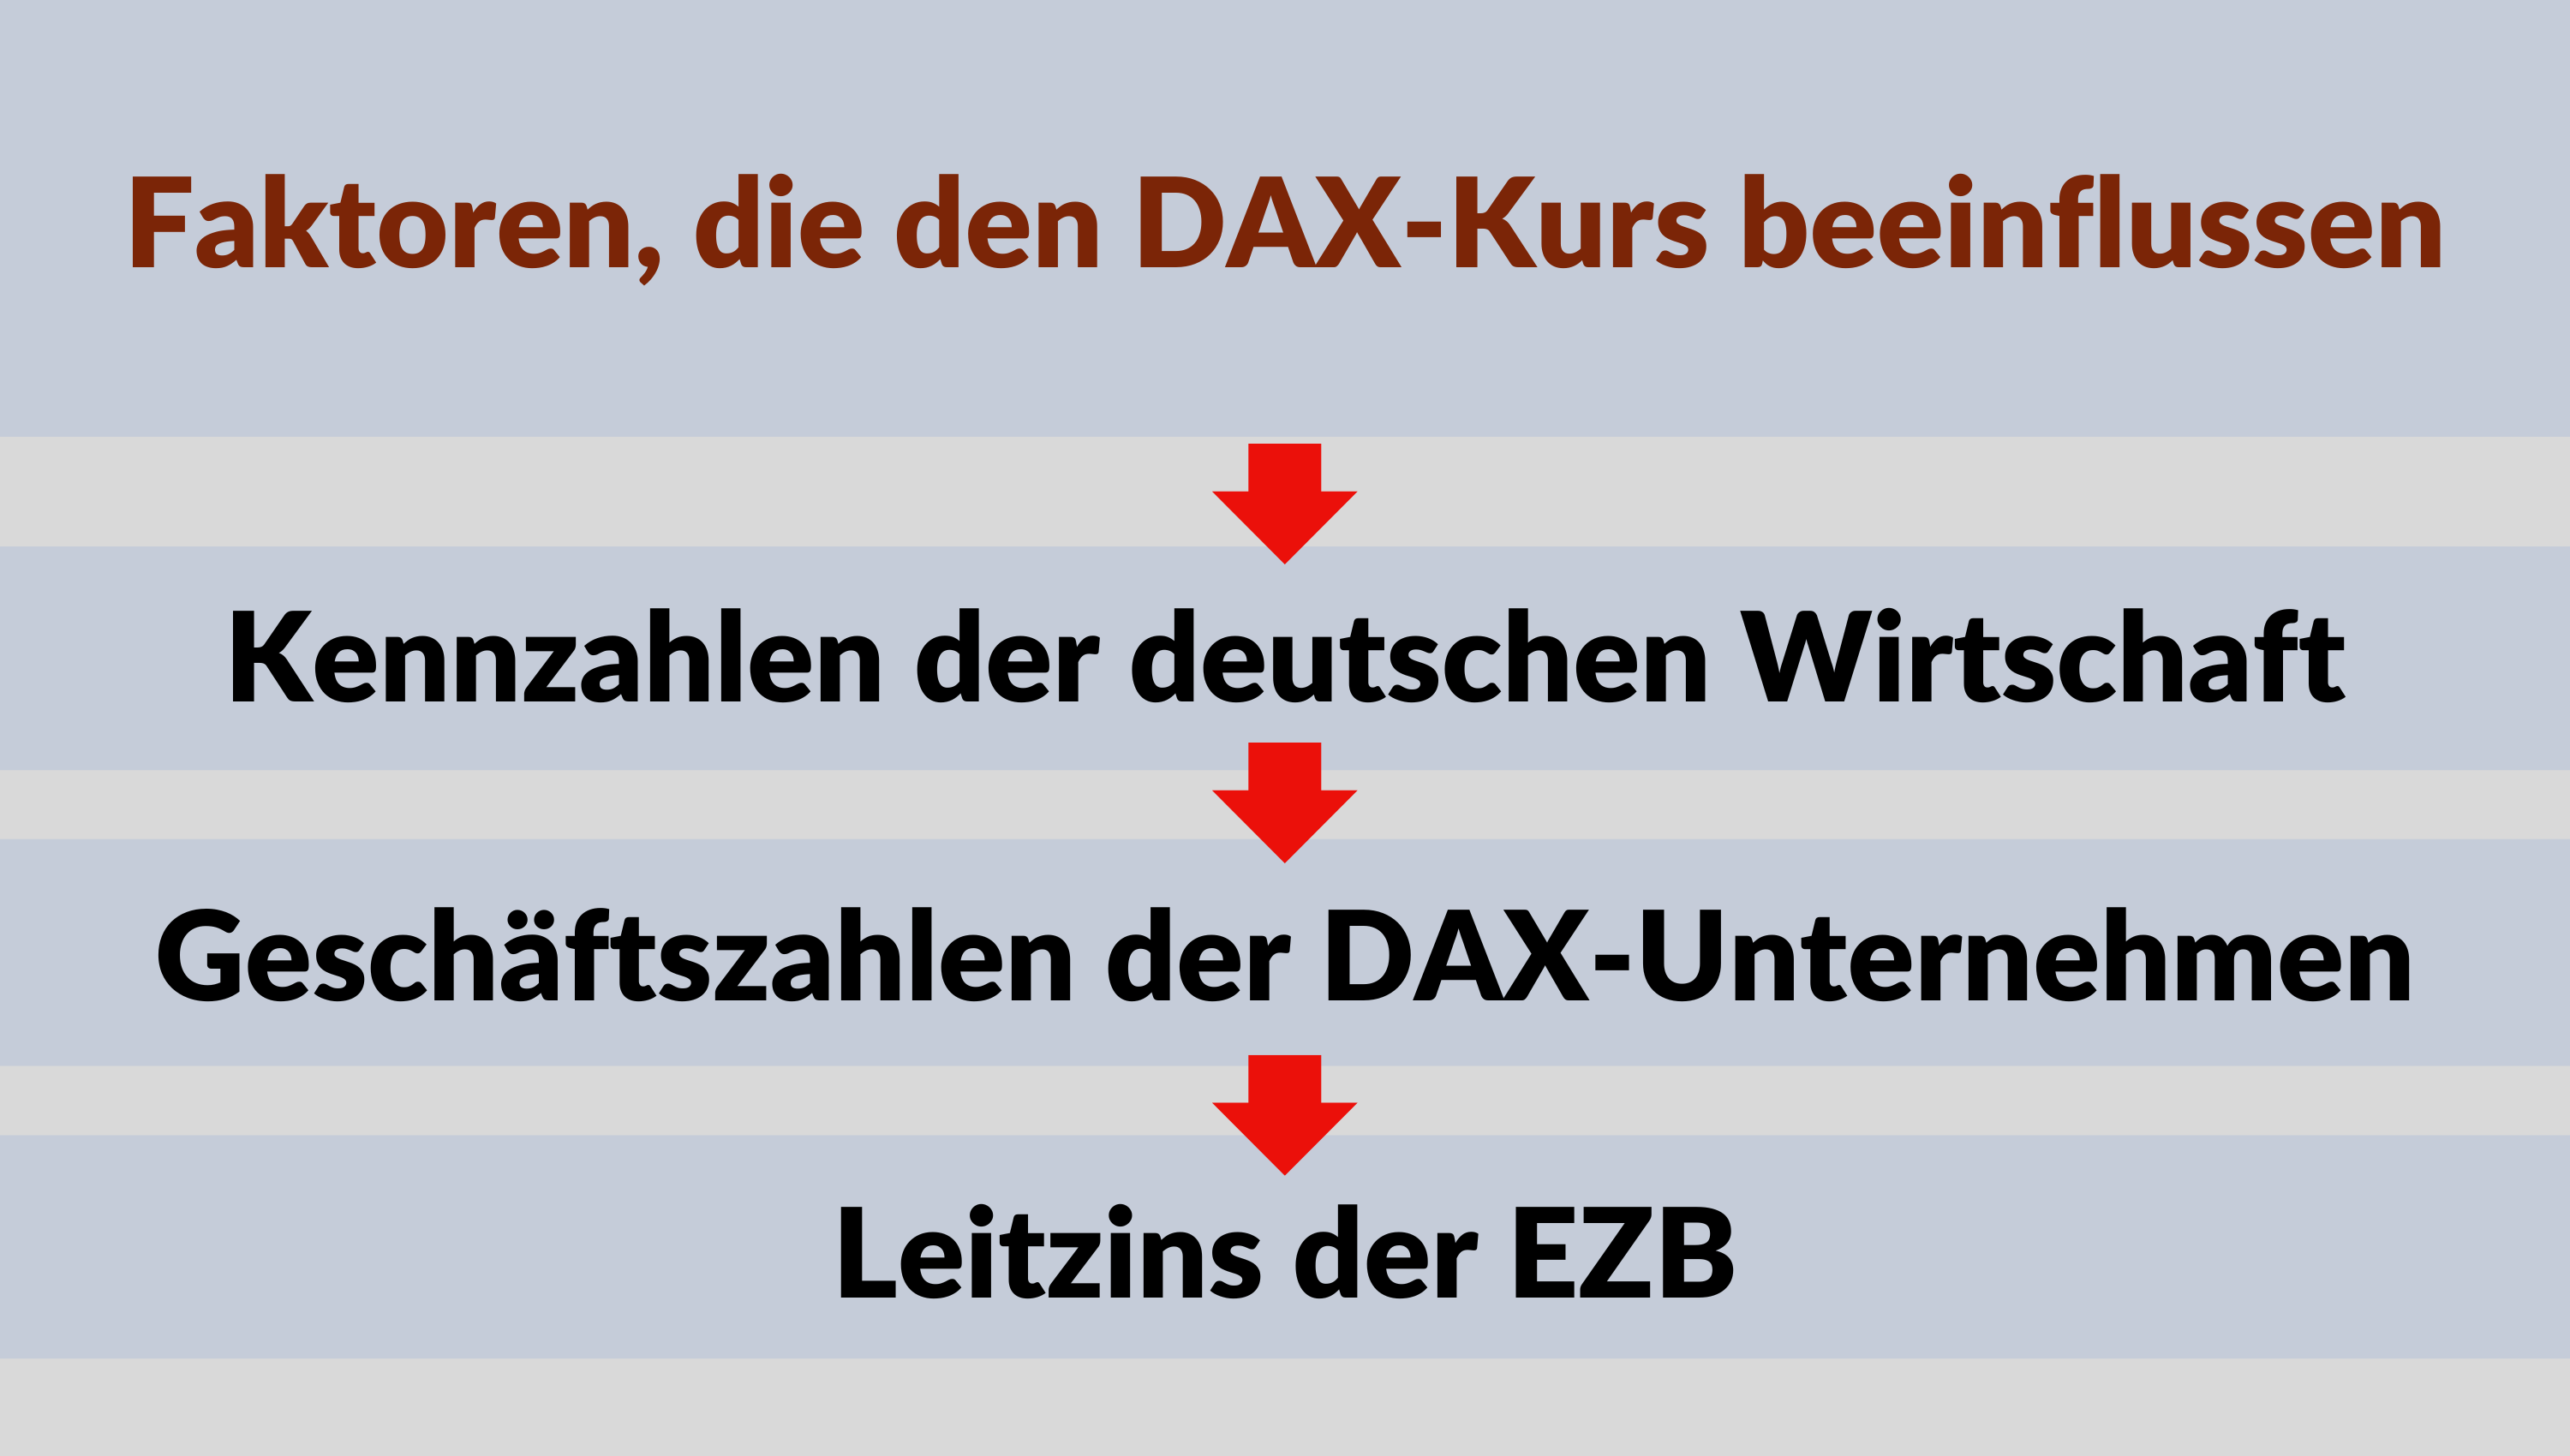 Faktoren die den DAX beeinflussen